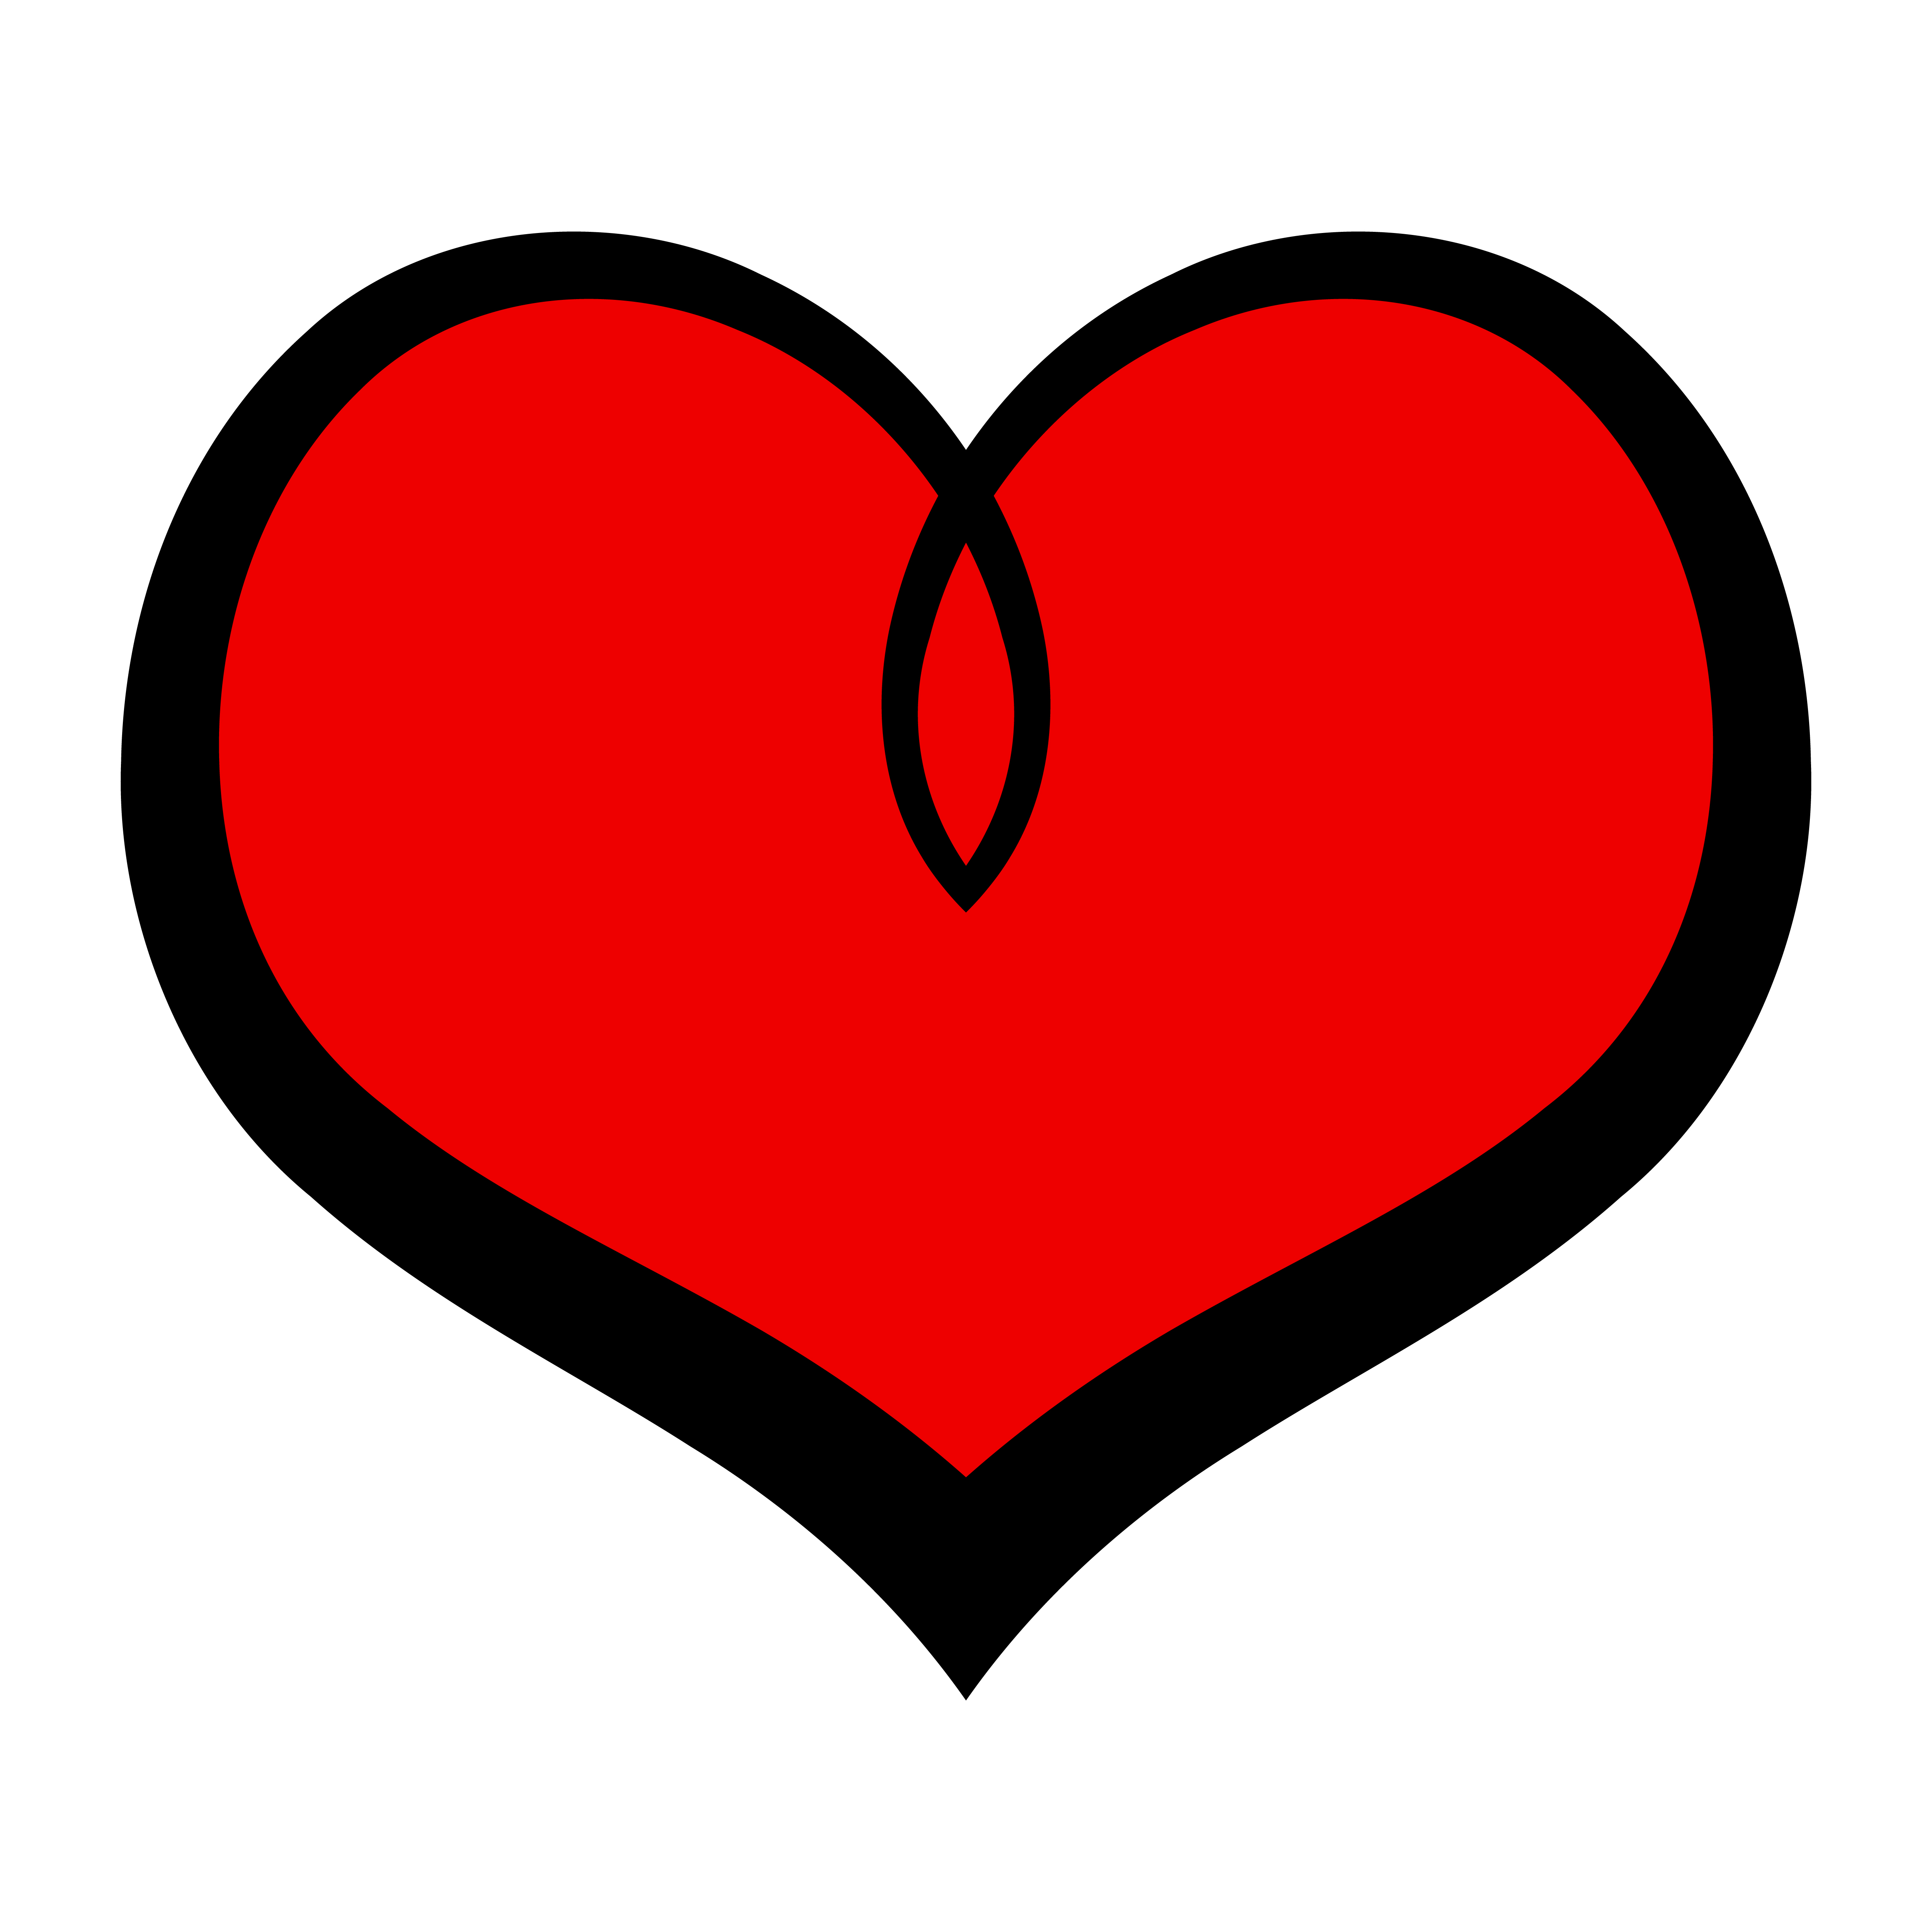 Heart Romantic Love Graphic 552118 Vector Art At Vecteezy